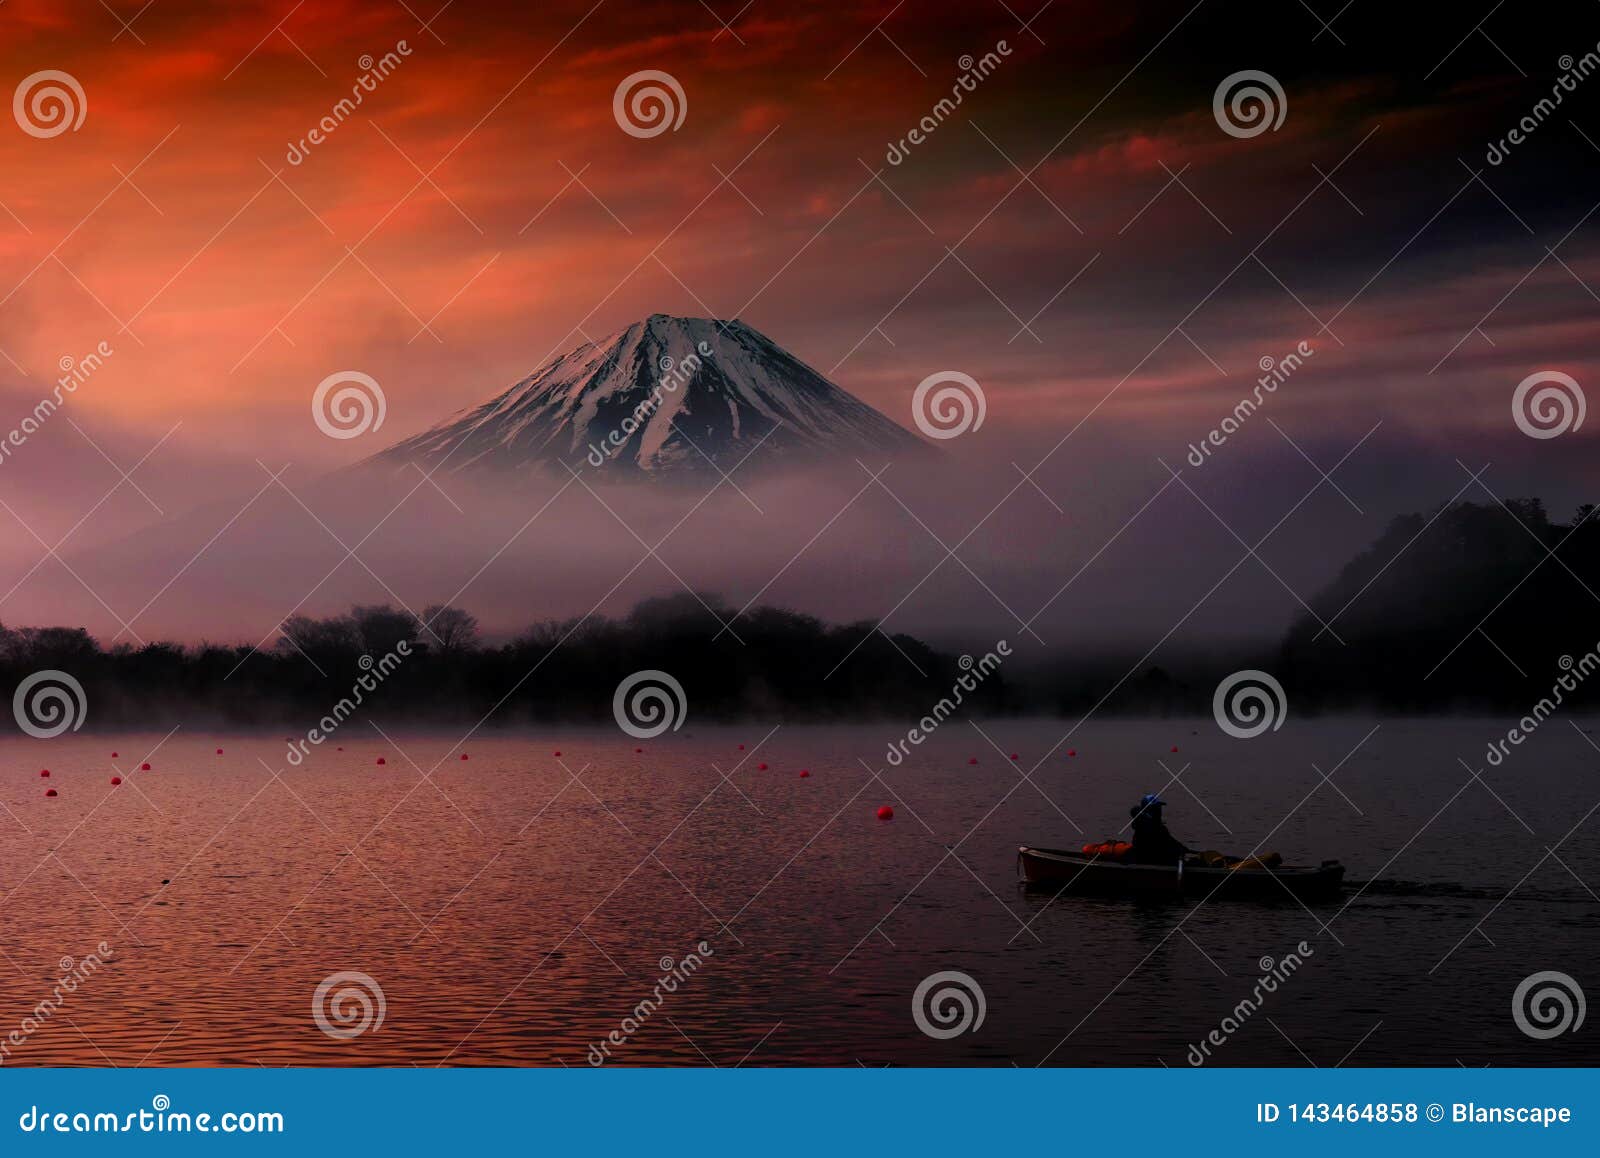 Mount Fuji And Lake Shoji At Dawn Japan Stock Photo Image Of